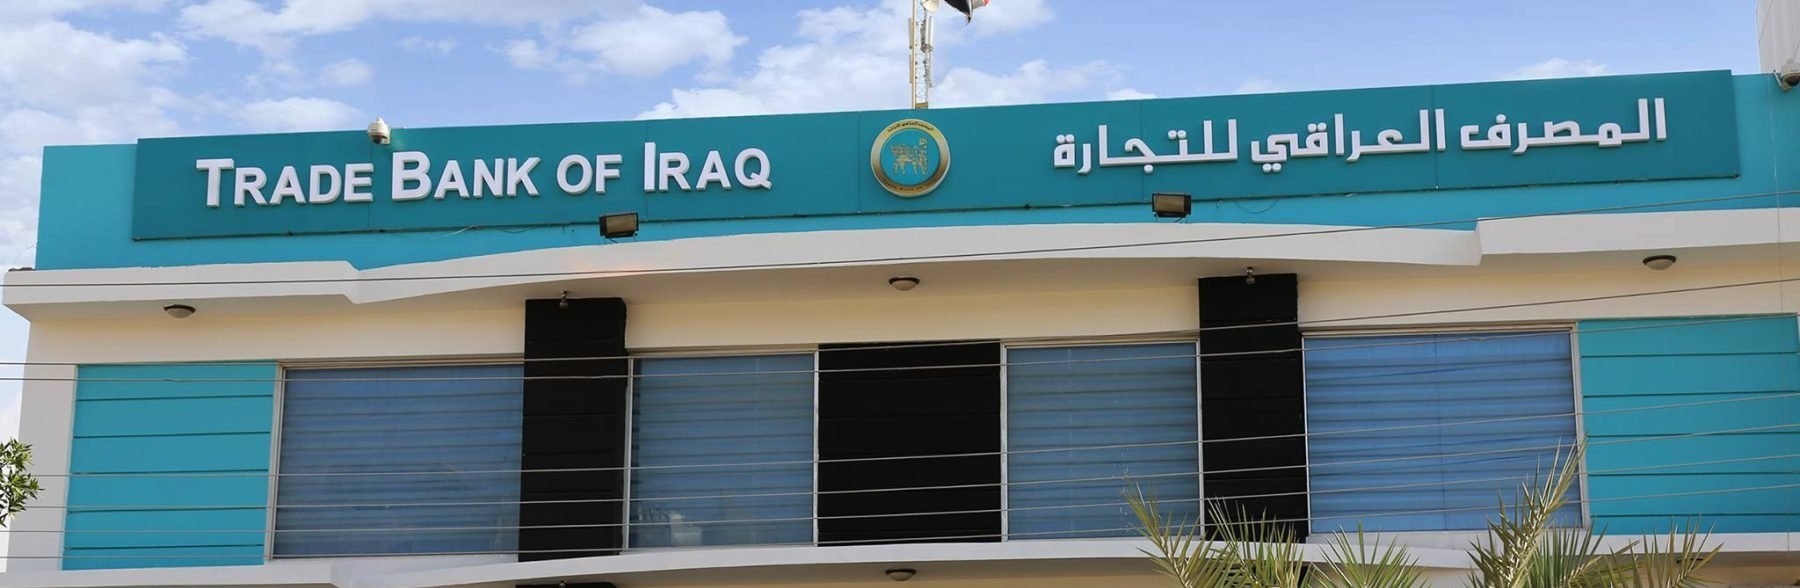 المصرف العراقي يعلن اعتماد آلية عمل جديدة لتصريف الدولار للمسافرين